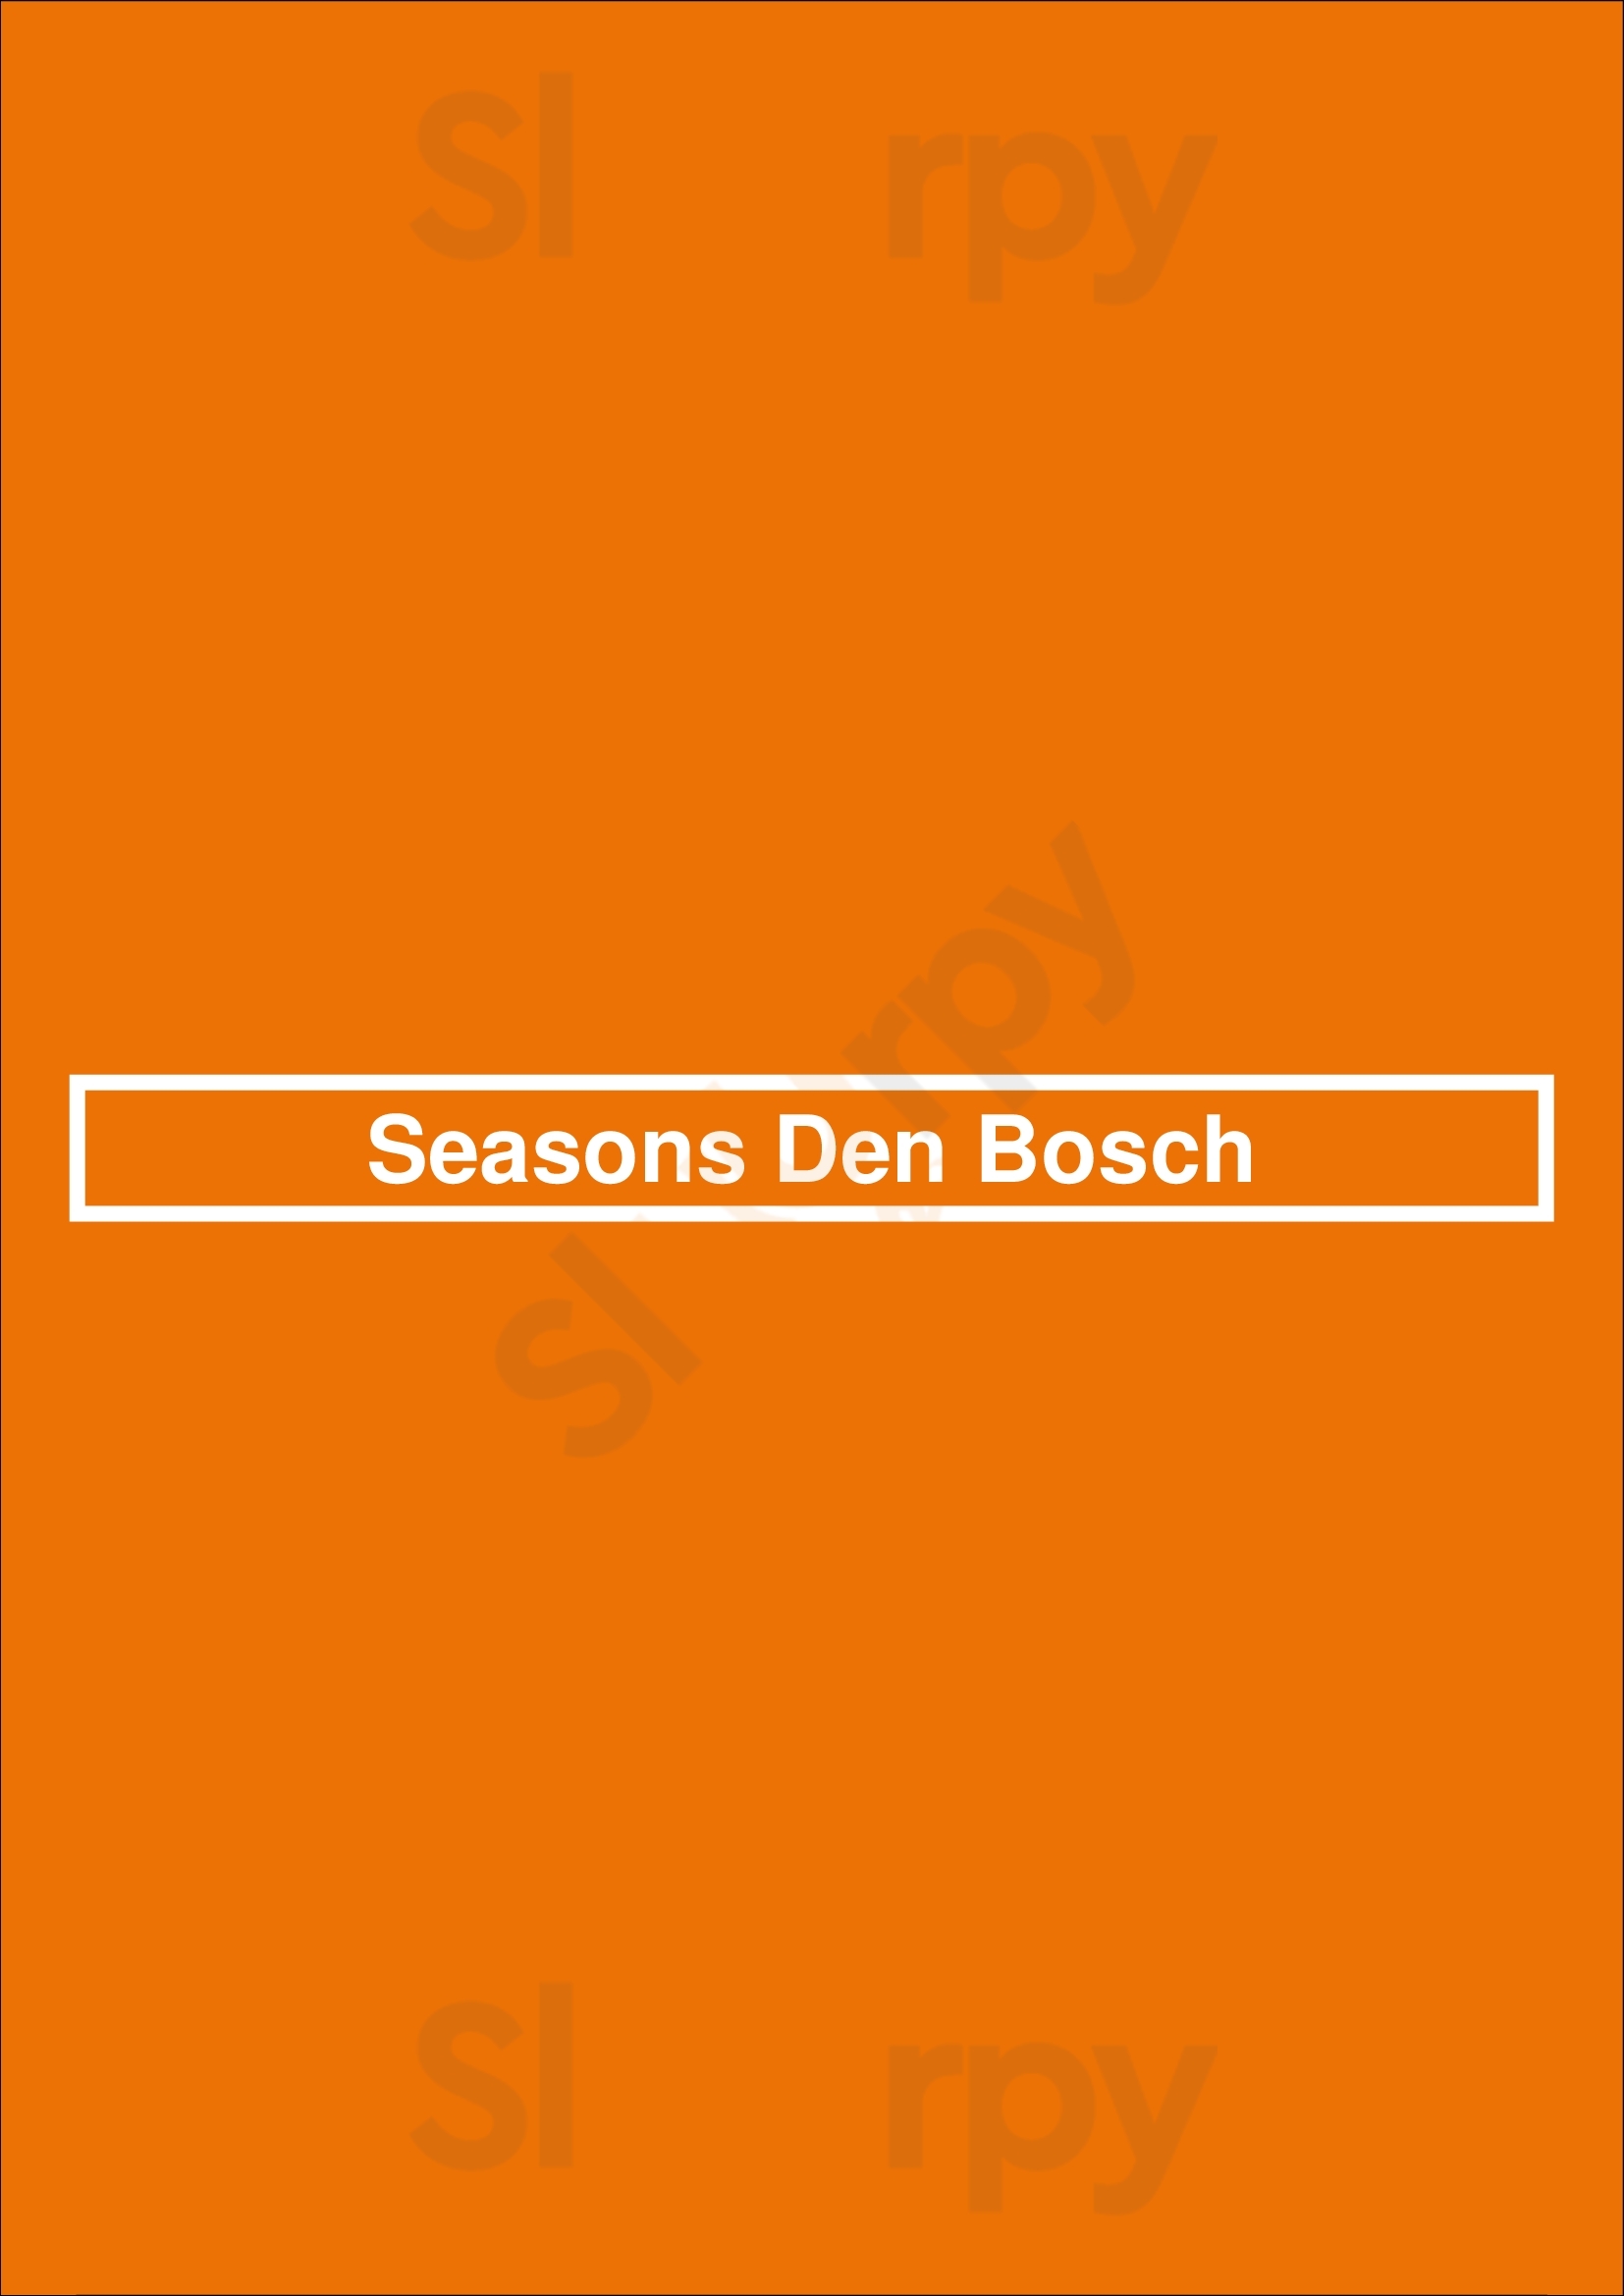 Seasons Den Bosch Den Bosch Menu - 1